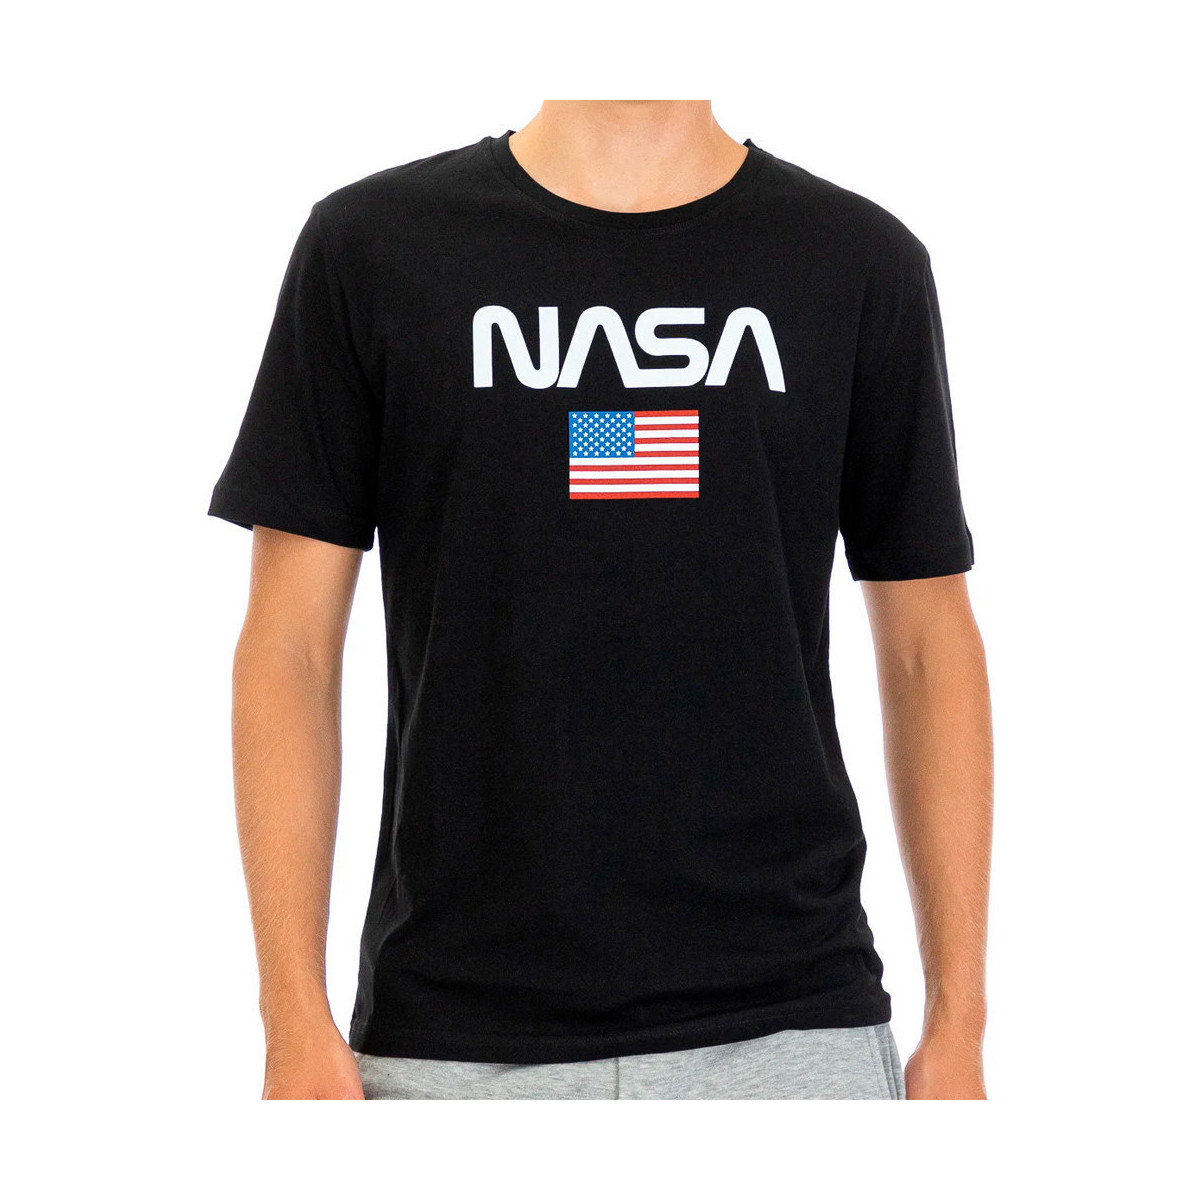 Vêtements Homme T-shirts manches courtes Nasa -NASA40T Noir